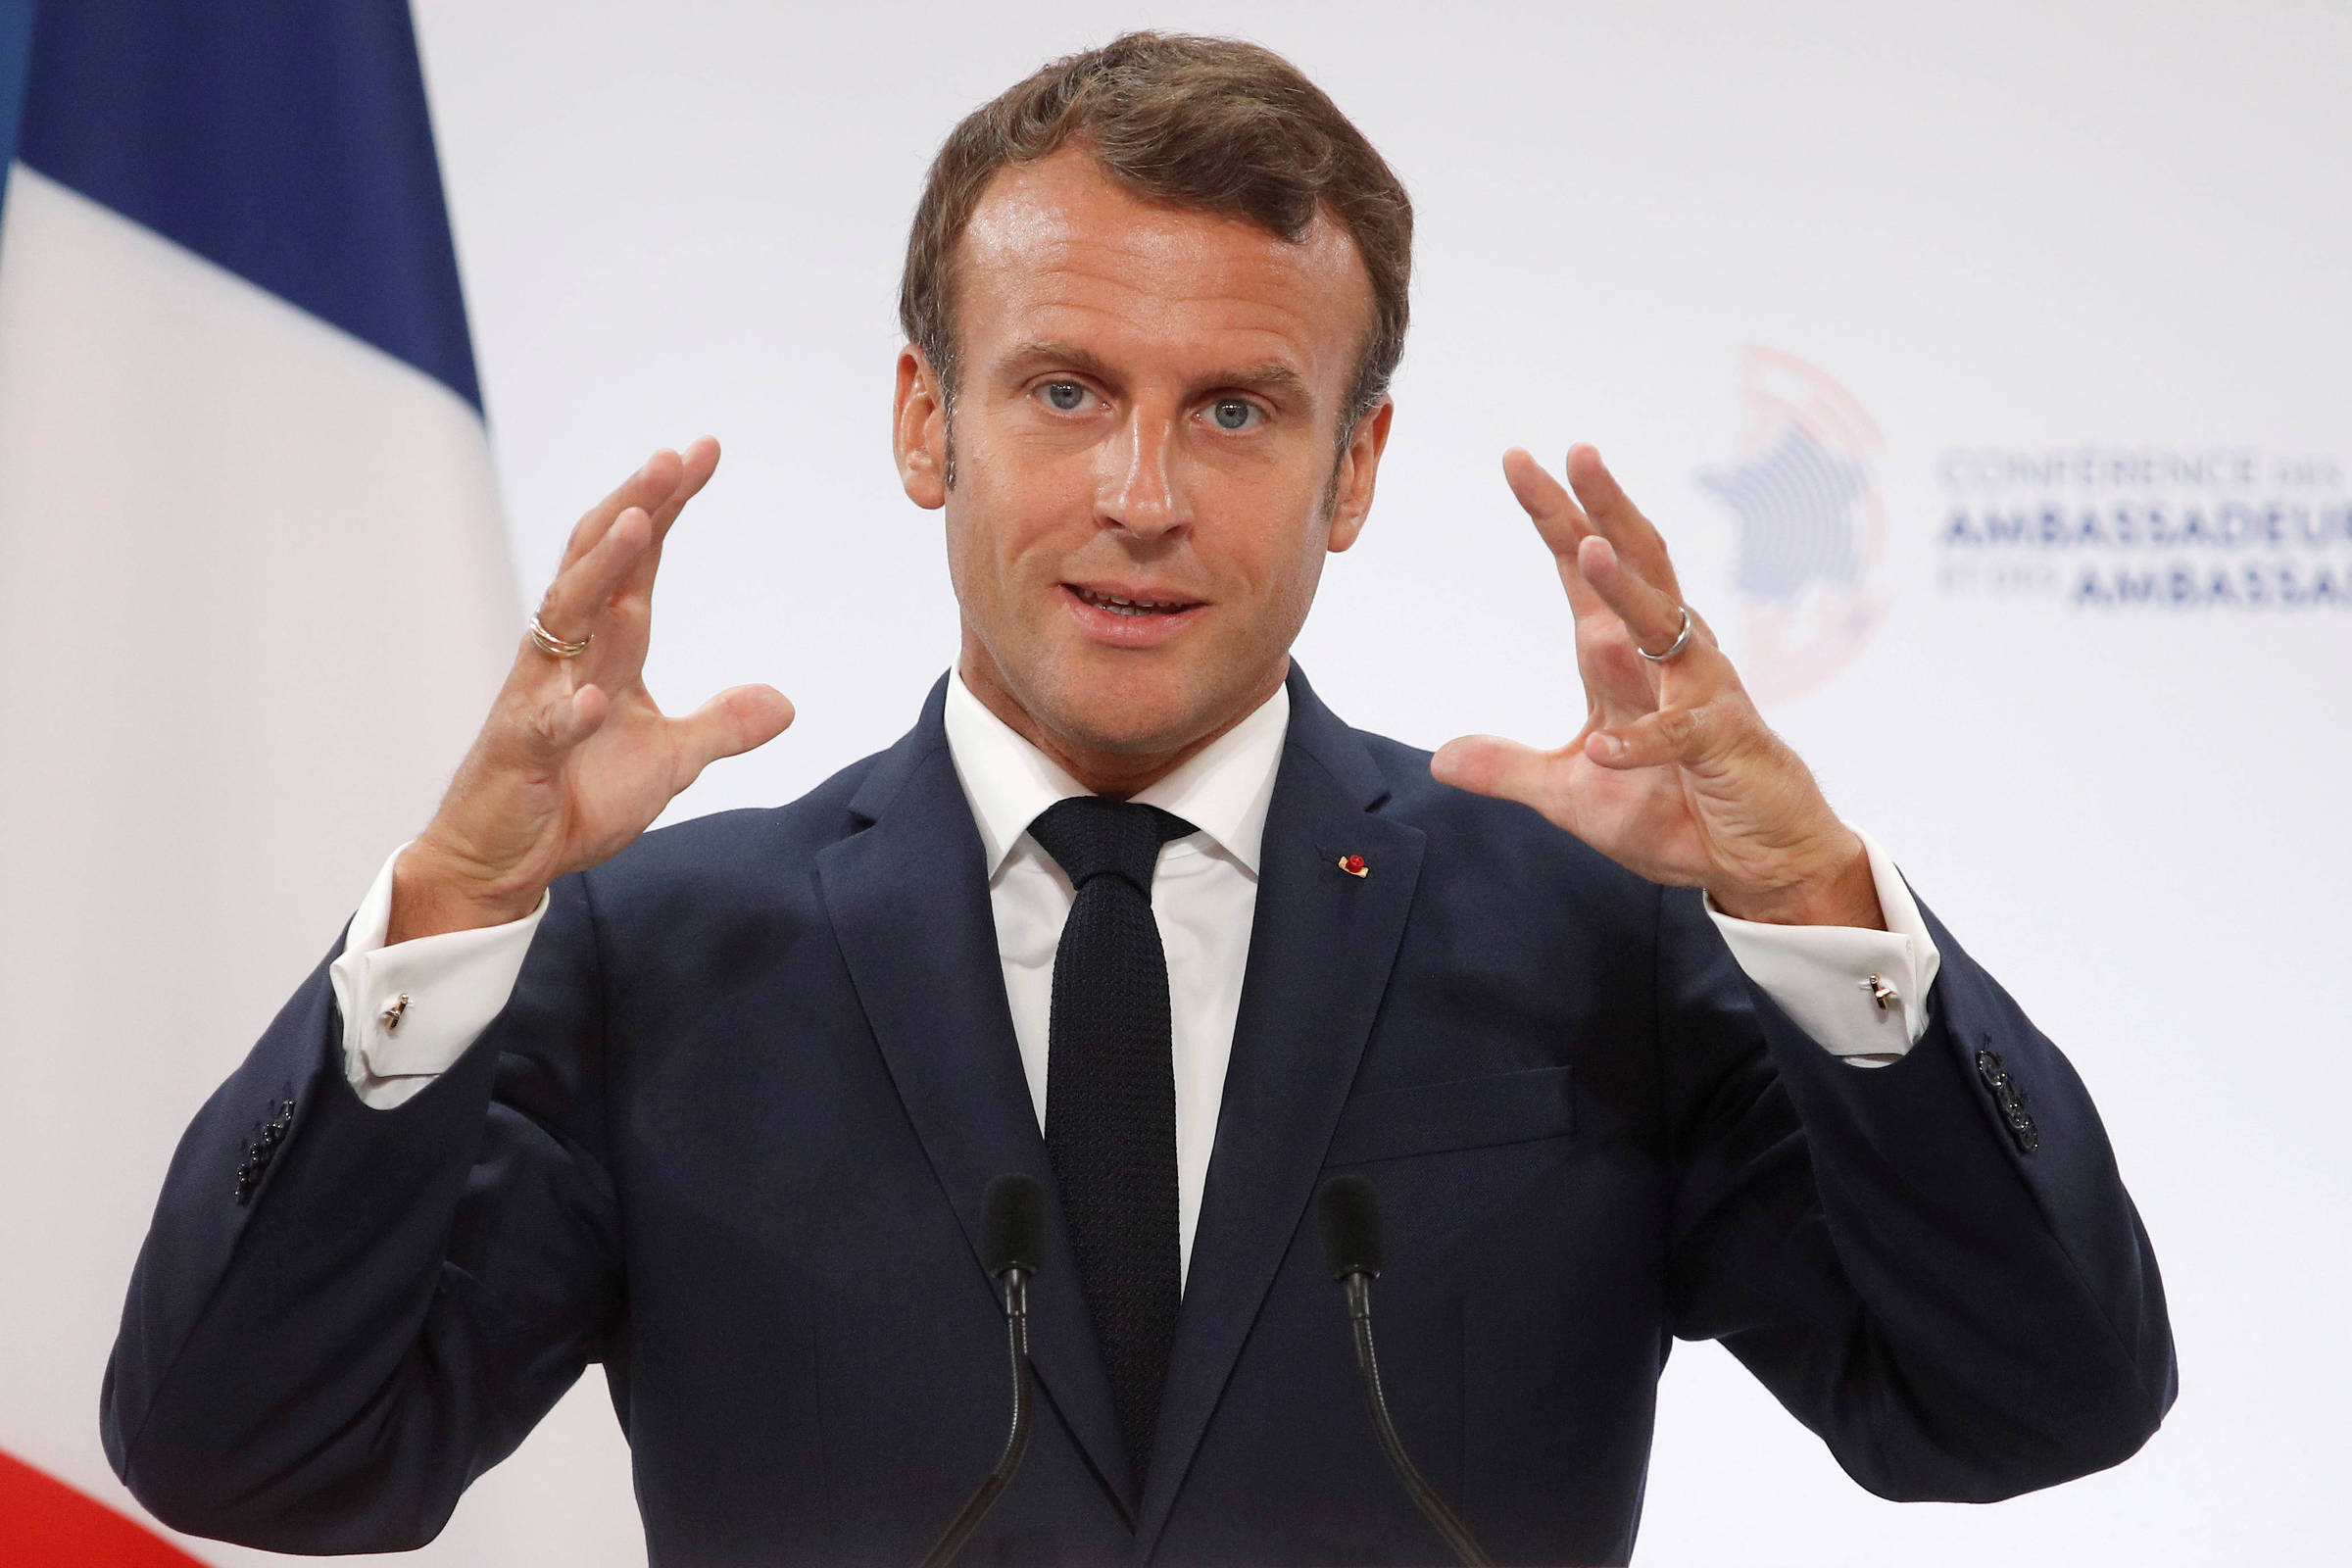 Bancada ruralista reage a Macron e diz que não aceitará acusações